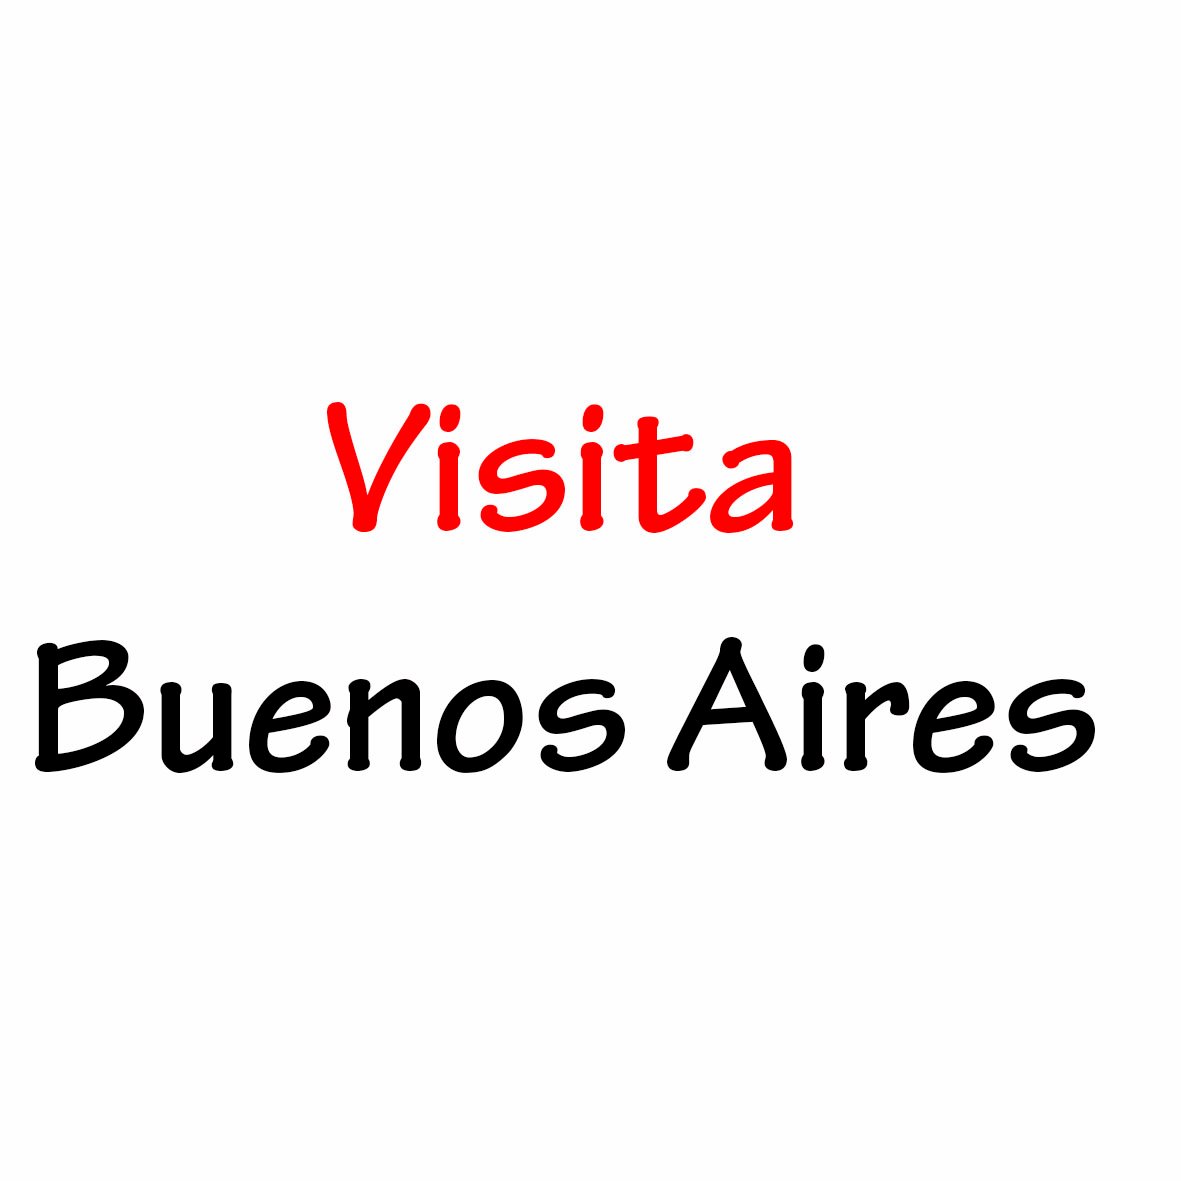 Nuestra intención es fomentar el turismo en la Ciudad de Buenos Aires. Dar información sobre la Ciudad